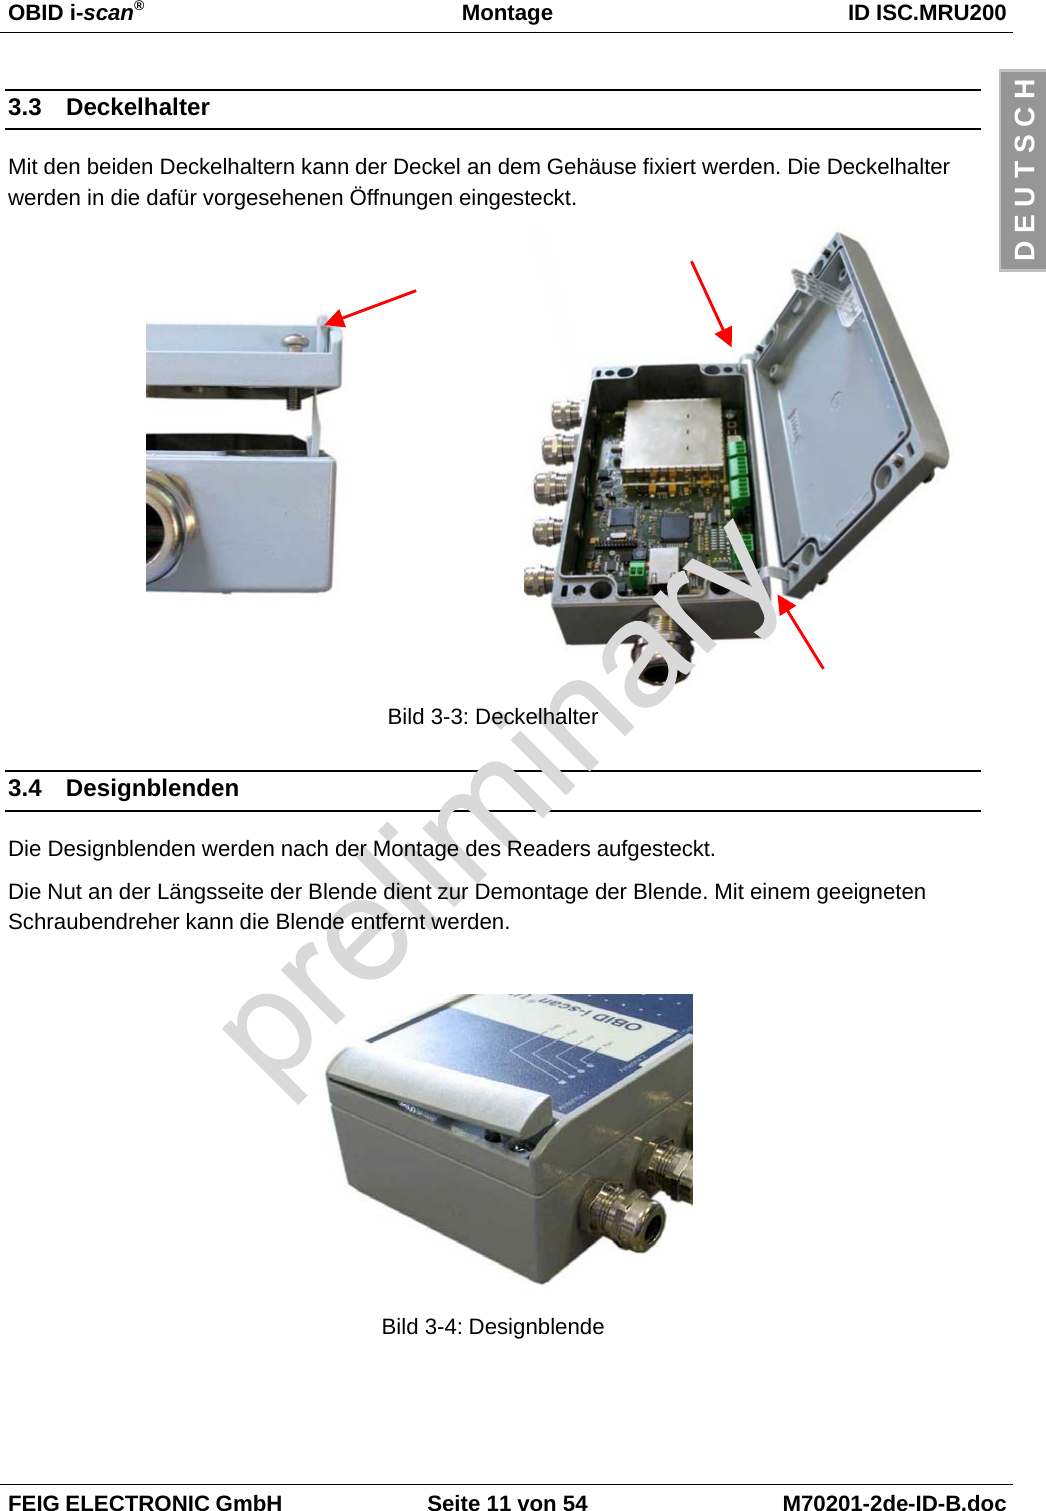 OBID i-scan®Montage ID ISC.MRU200FEIG ELECTRONIC GmbH Seite 11 von 54 M70201-2de-ID-B.docD E U T S C H3.3 DeckelhalterMit den beiden Deckelhaltern kann der Deckel an dem Gehäuse fixiert werden. Die Deckelhalterwerden in die dafür vorgesehenen Öffnungen eingesteckt.Bild 3-3: Deckelhalter3.4 DesignblendenDie Designblenden werden nach der Montage des Readers aufgesteckt.Die Nut an der Längsseite der Blende dient zur Demontage der Blende. Mit einem geeignetenSchraubendreher kann die Blende entfernt werden.Bild 3-4: Designblende